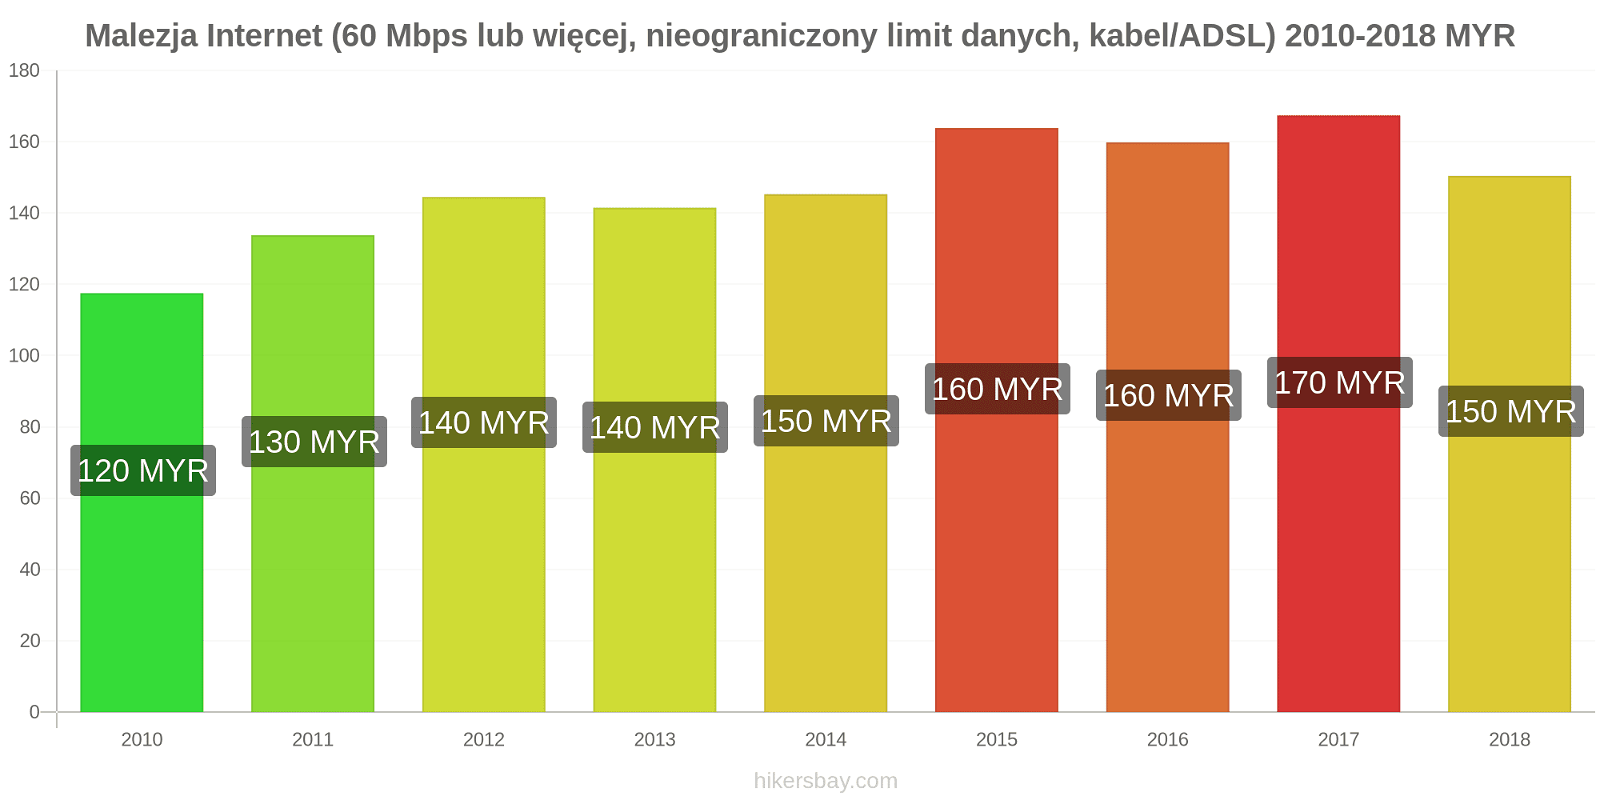 Malezja zmiany cen Internet (60 Mbps lub więcej, nieograniczony limit danych, kabel/ADSL) hikersbay.com